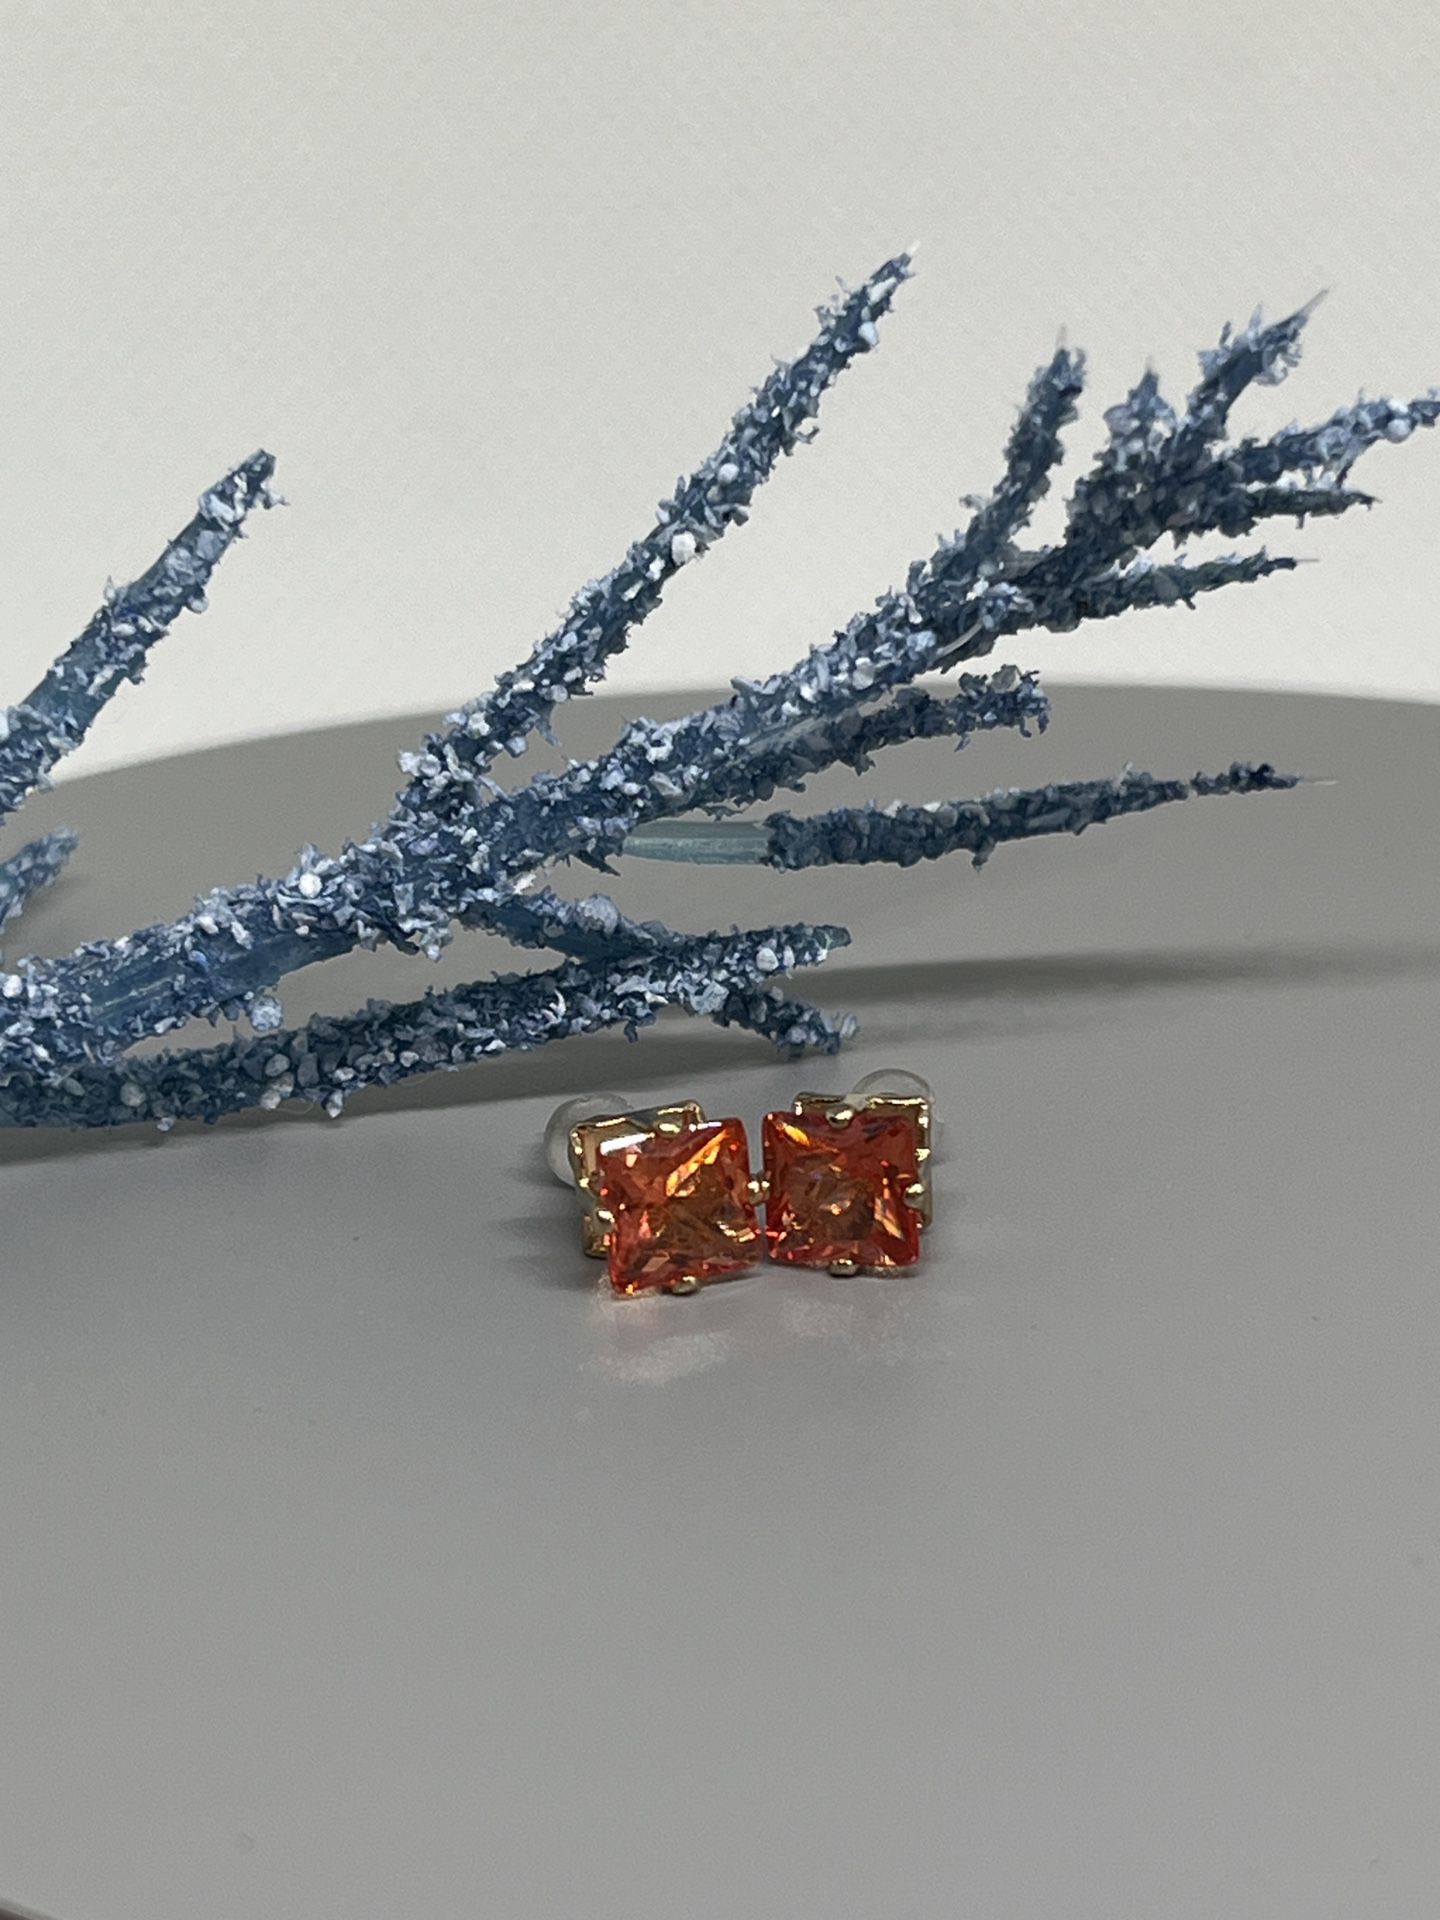 Swarovski Crystal Tangerine Studs Earrings.